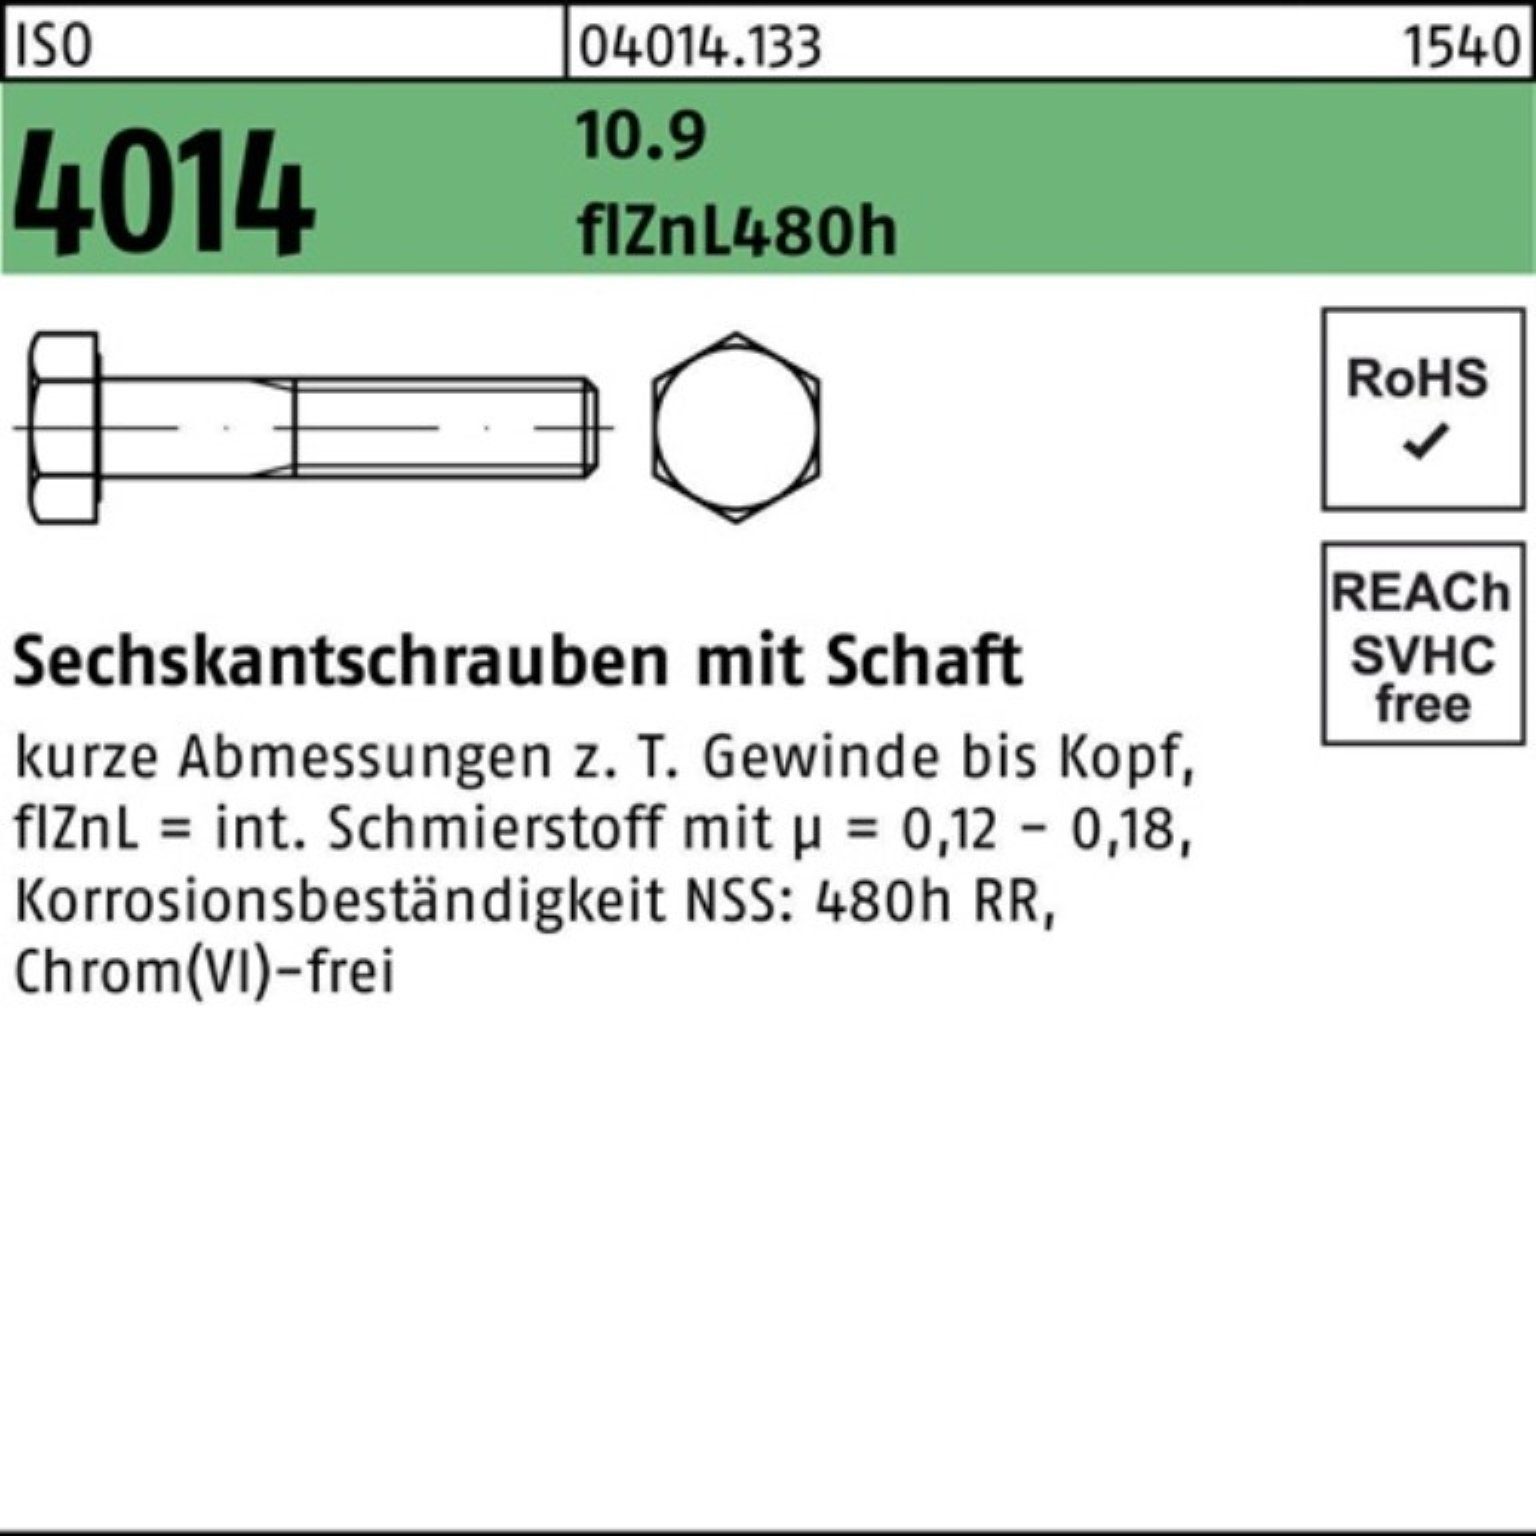 ISO Schaft Sechskantschraube 4014 90 M18x Bufab 10.9 zinklamellen 100er Pack Sechskantschraube